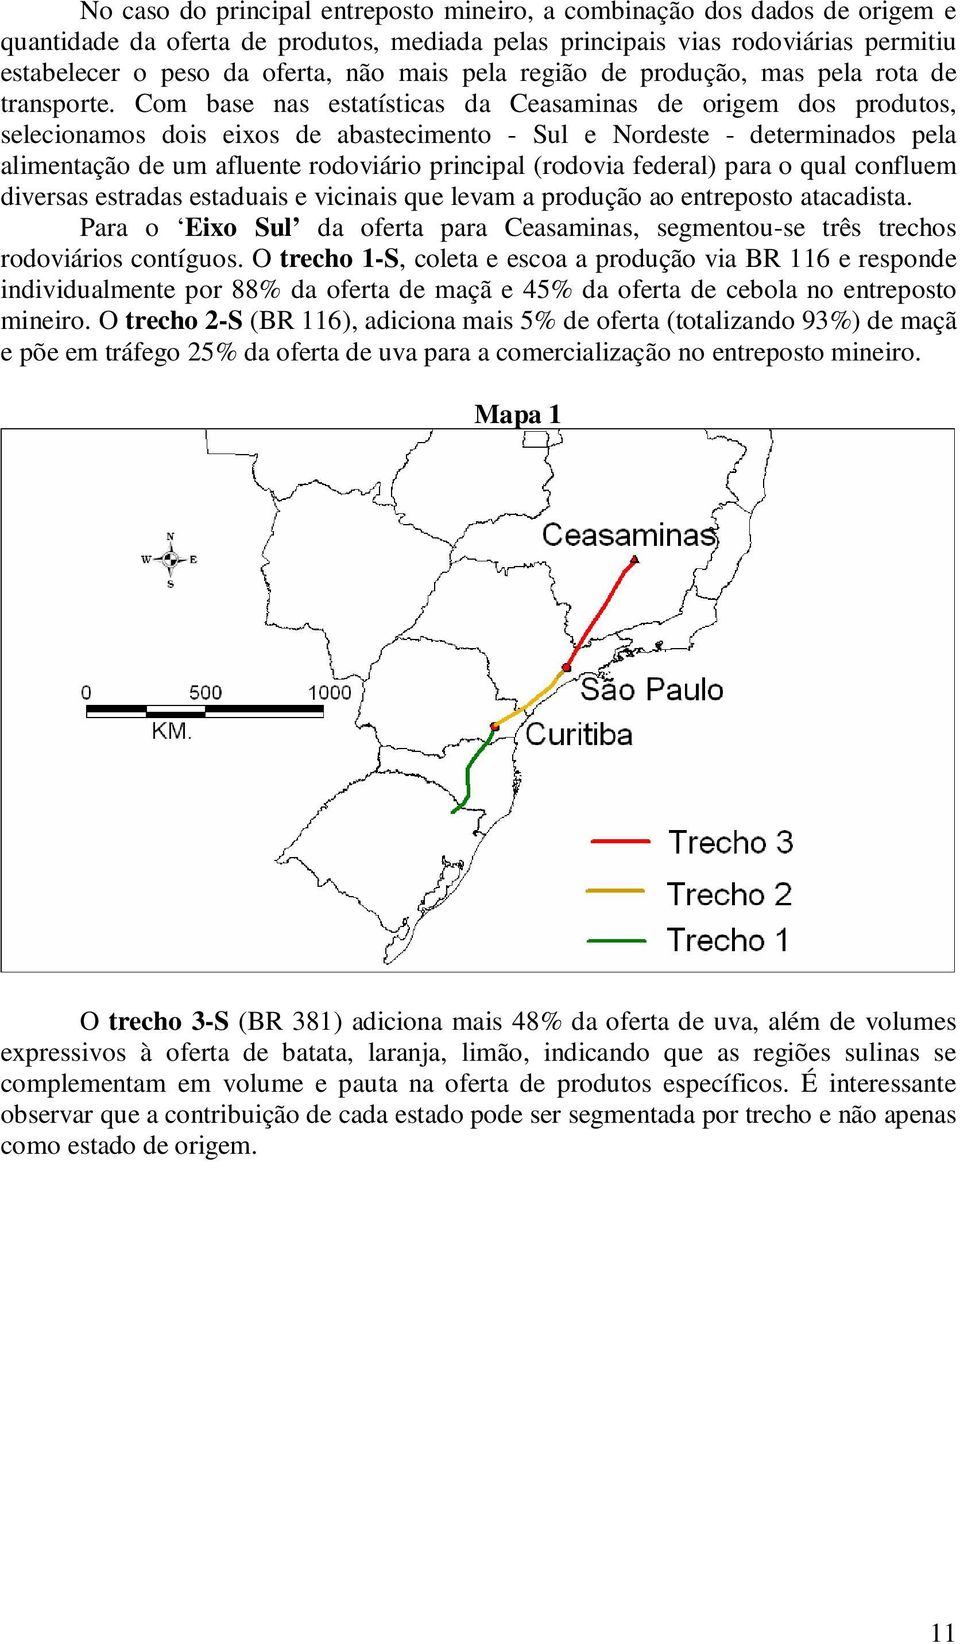 Com base nas estatísticas da Ceasaminas de origem dos produtos, selecionamos dois eixos de abastecimento - Sul e Nordeste - determinados pela alimentação de um afluente rodoviário principal (rodovia